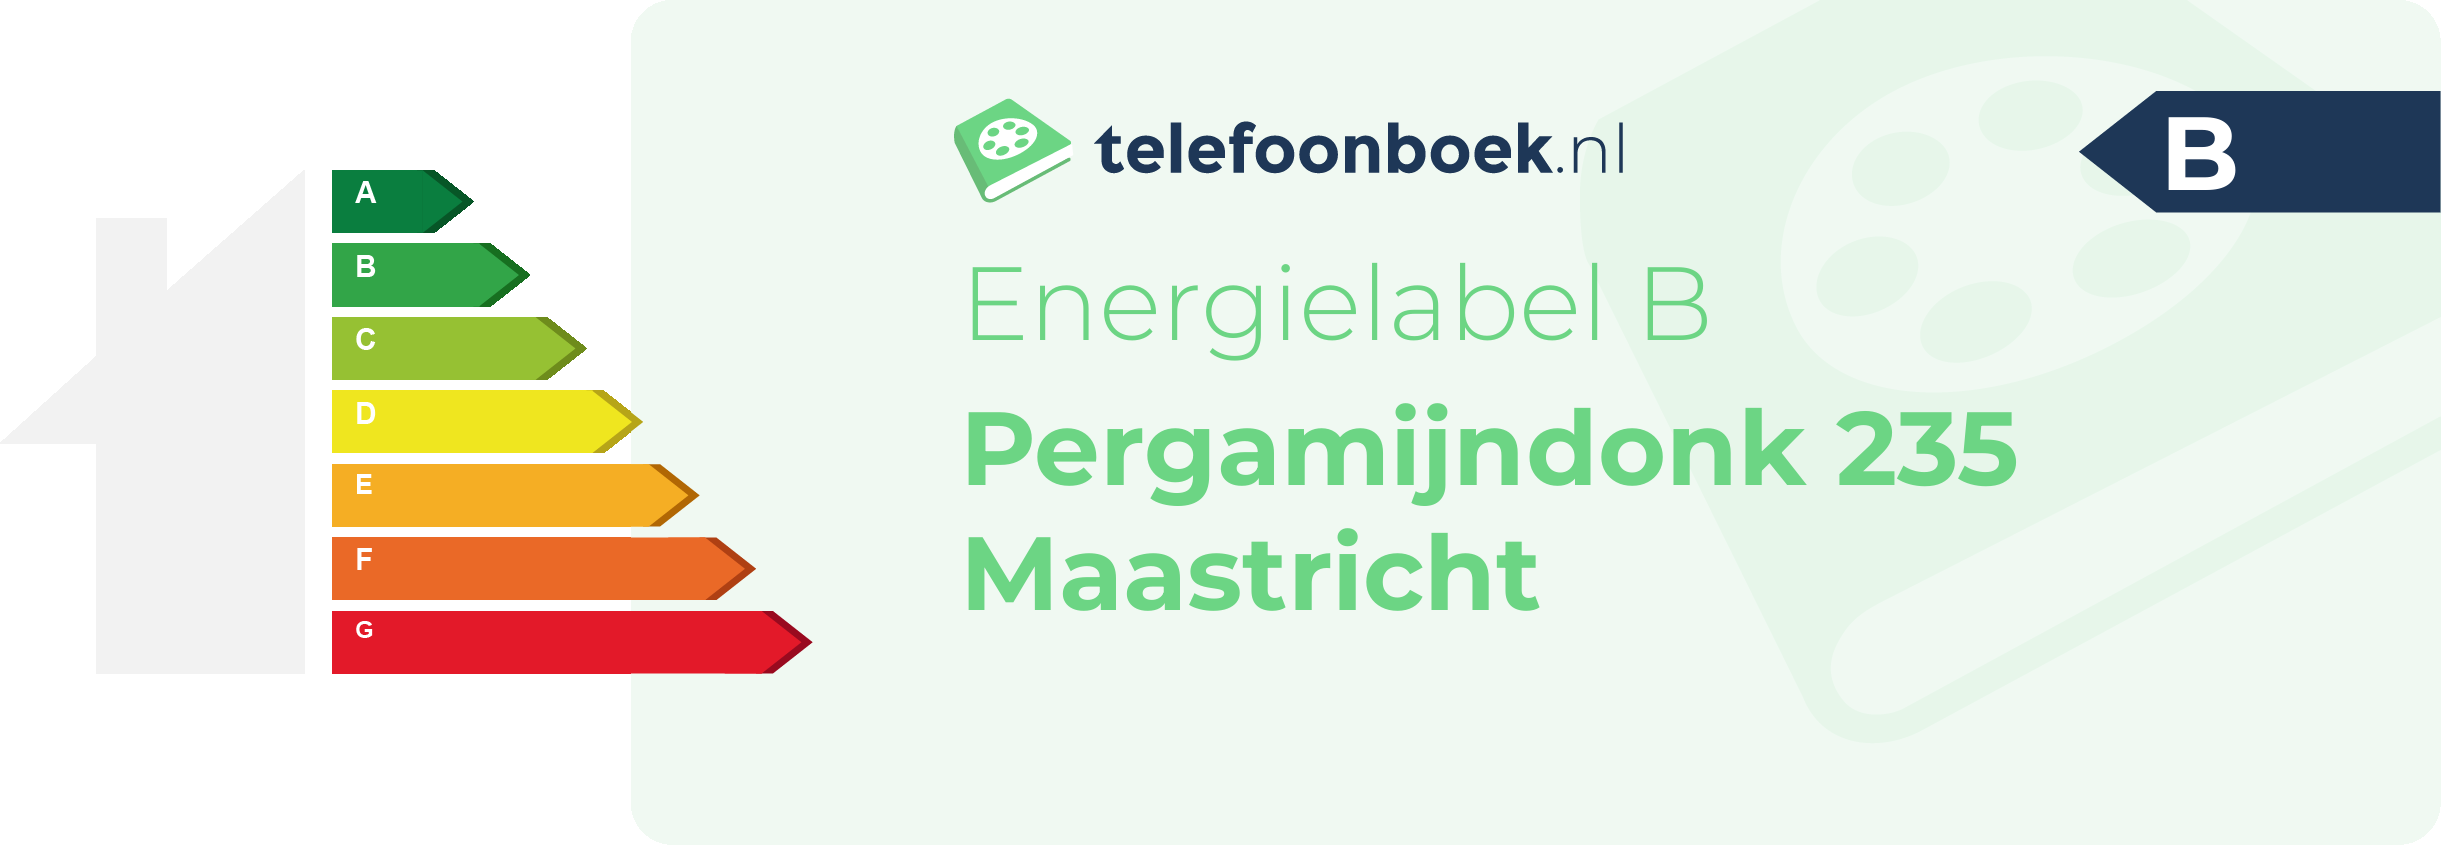 Energielabel Pergamijndonk 235 Maastricht